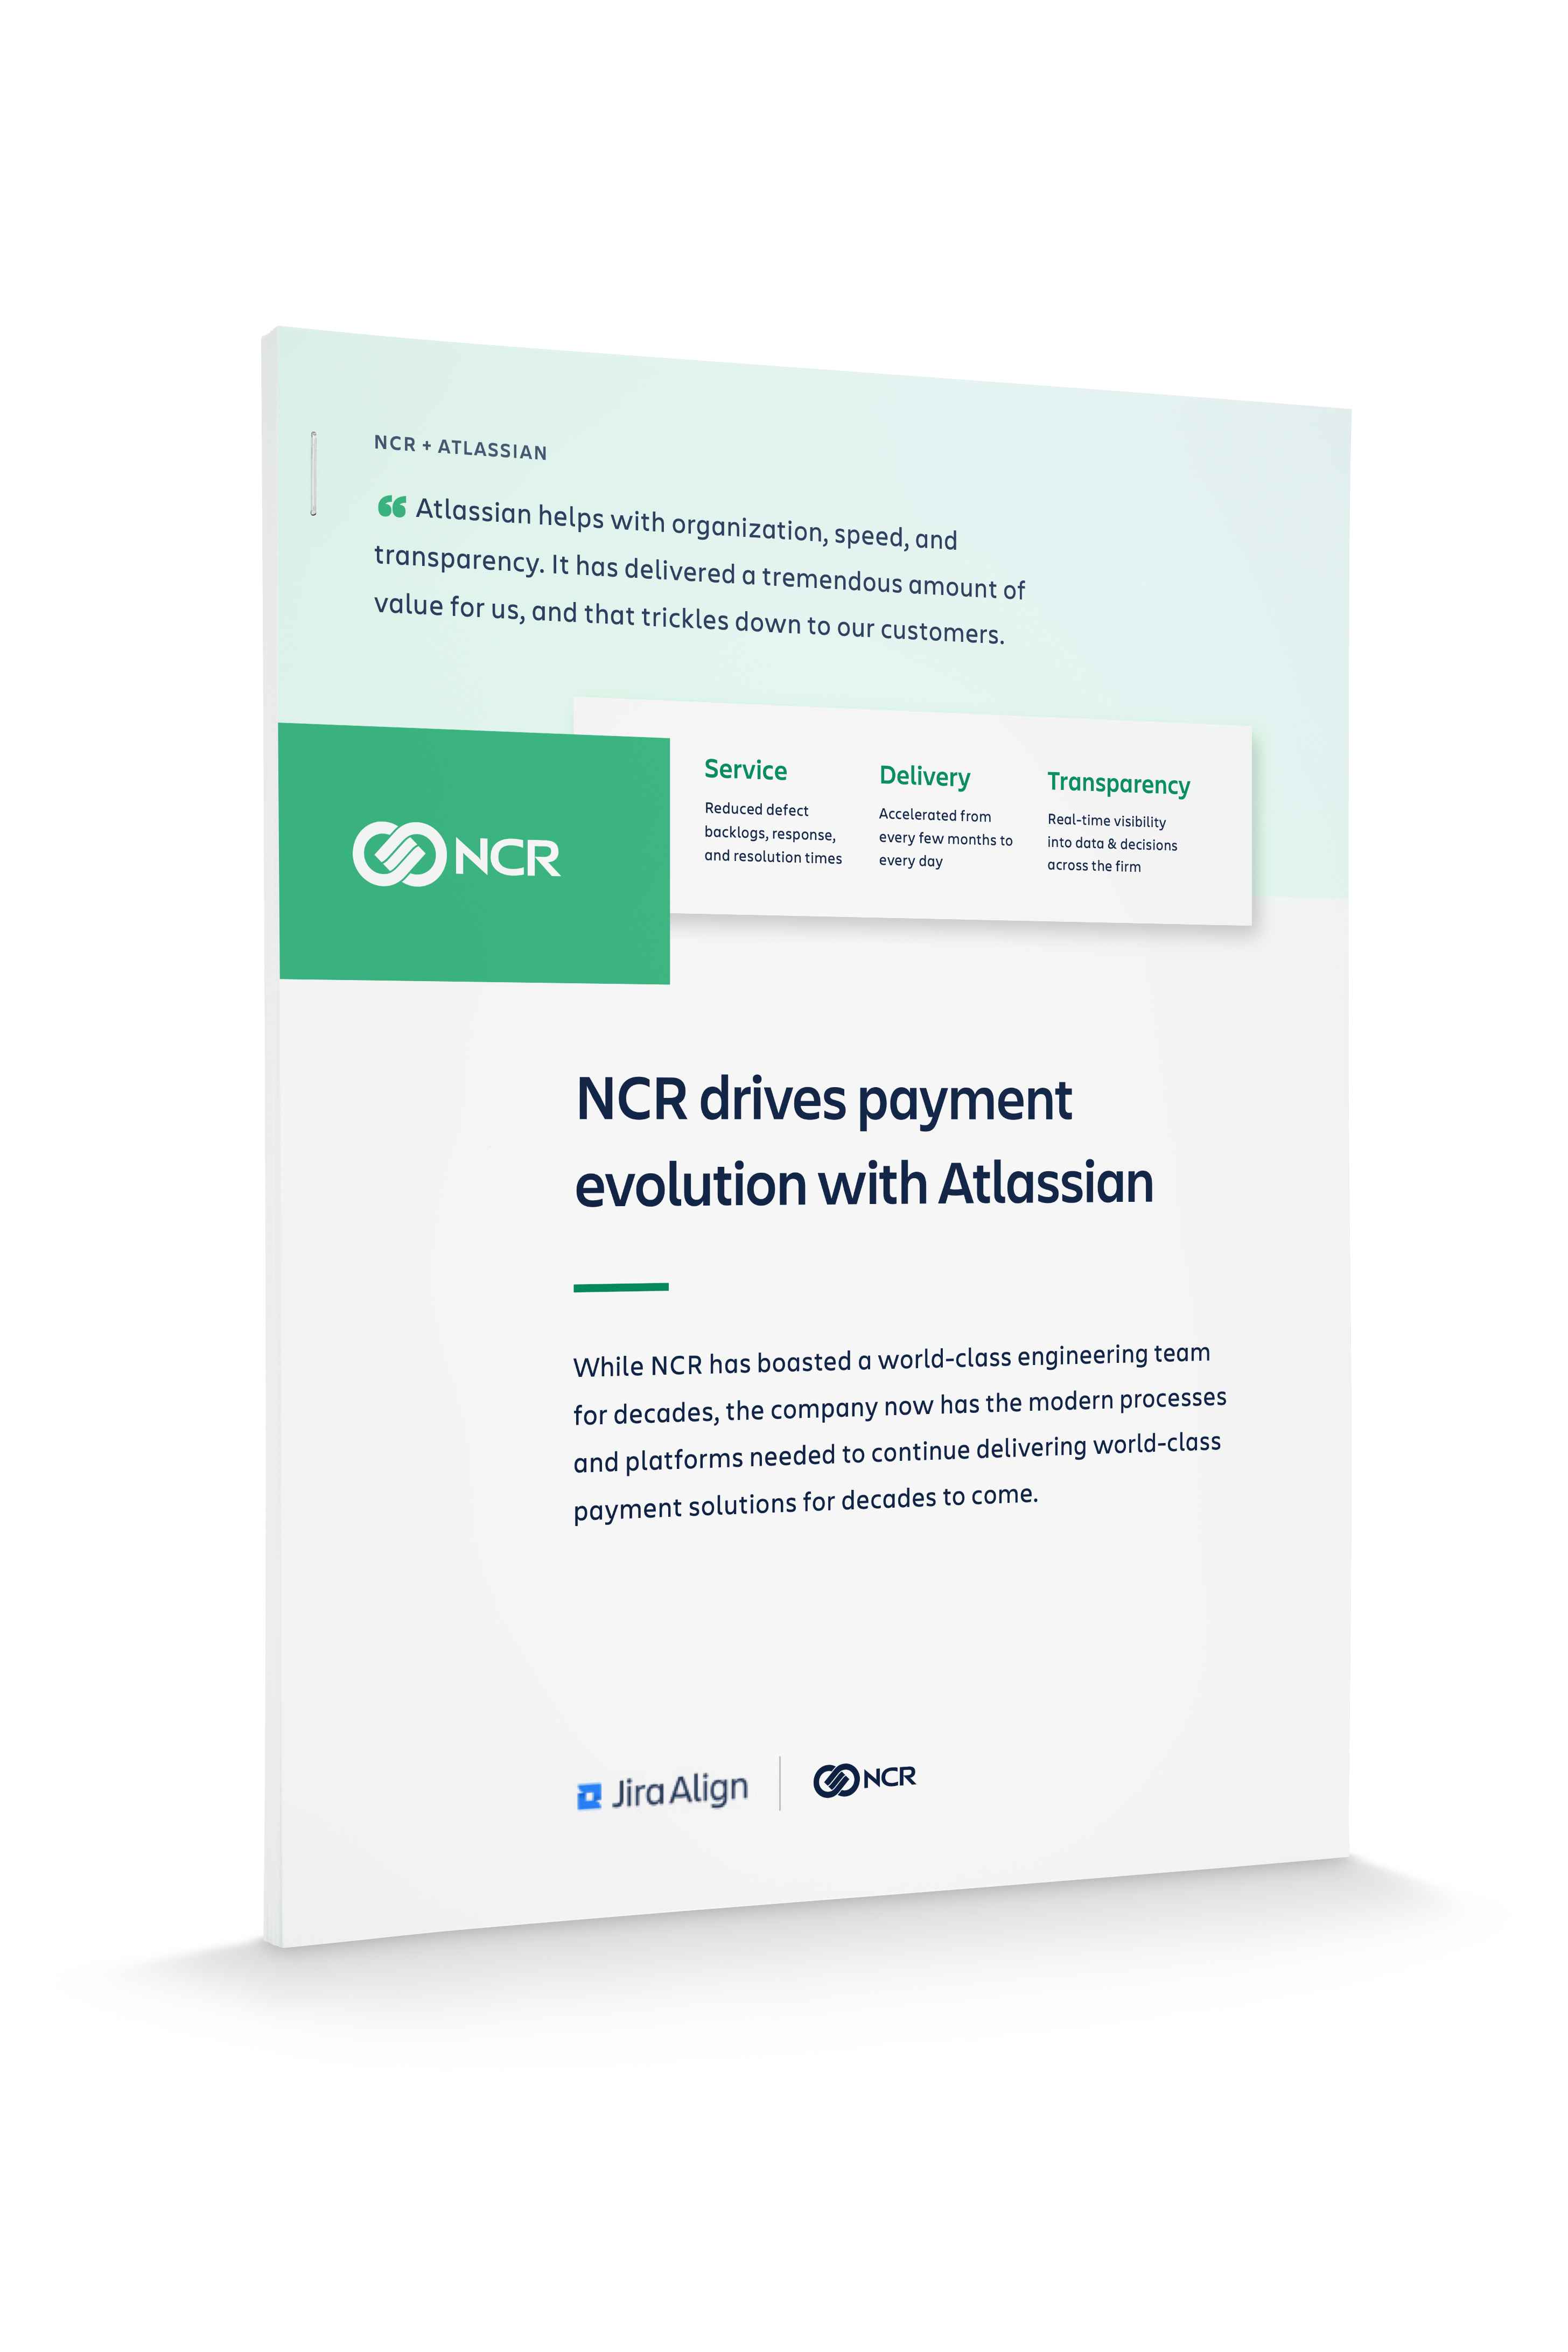 Обложка технического документа о компании NCR